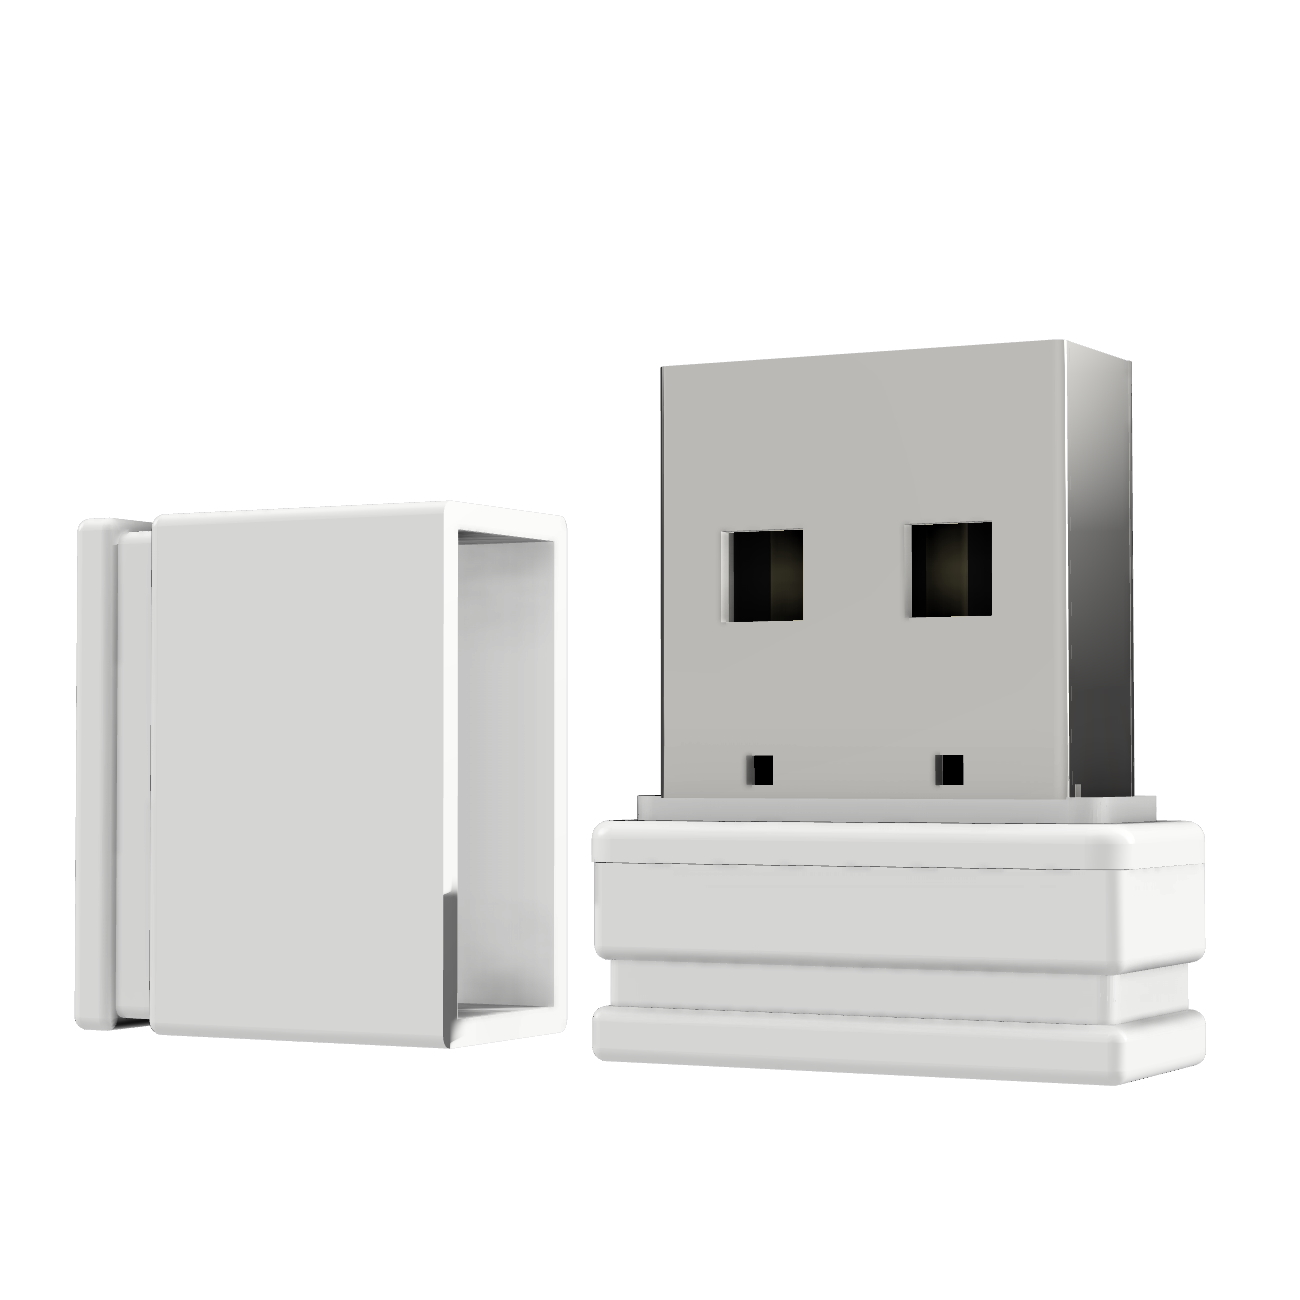 (Weiß, GB) ®ULTRA 32 USB USB-Stick P1 GERMANY Mini